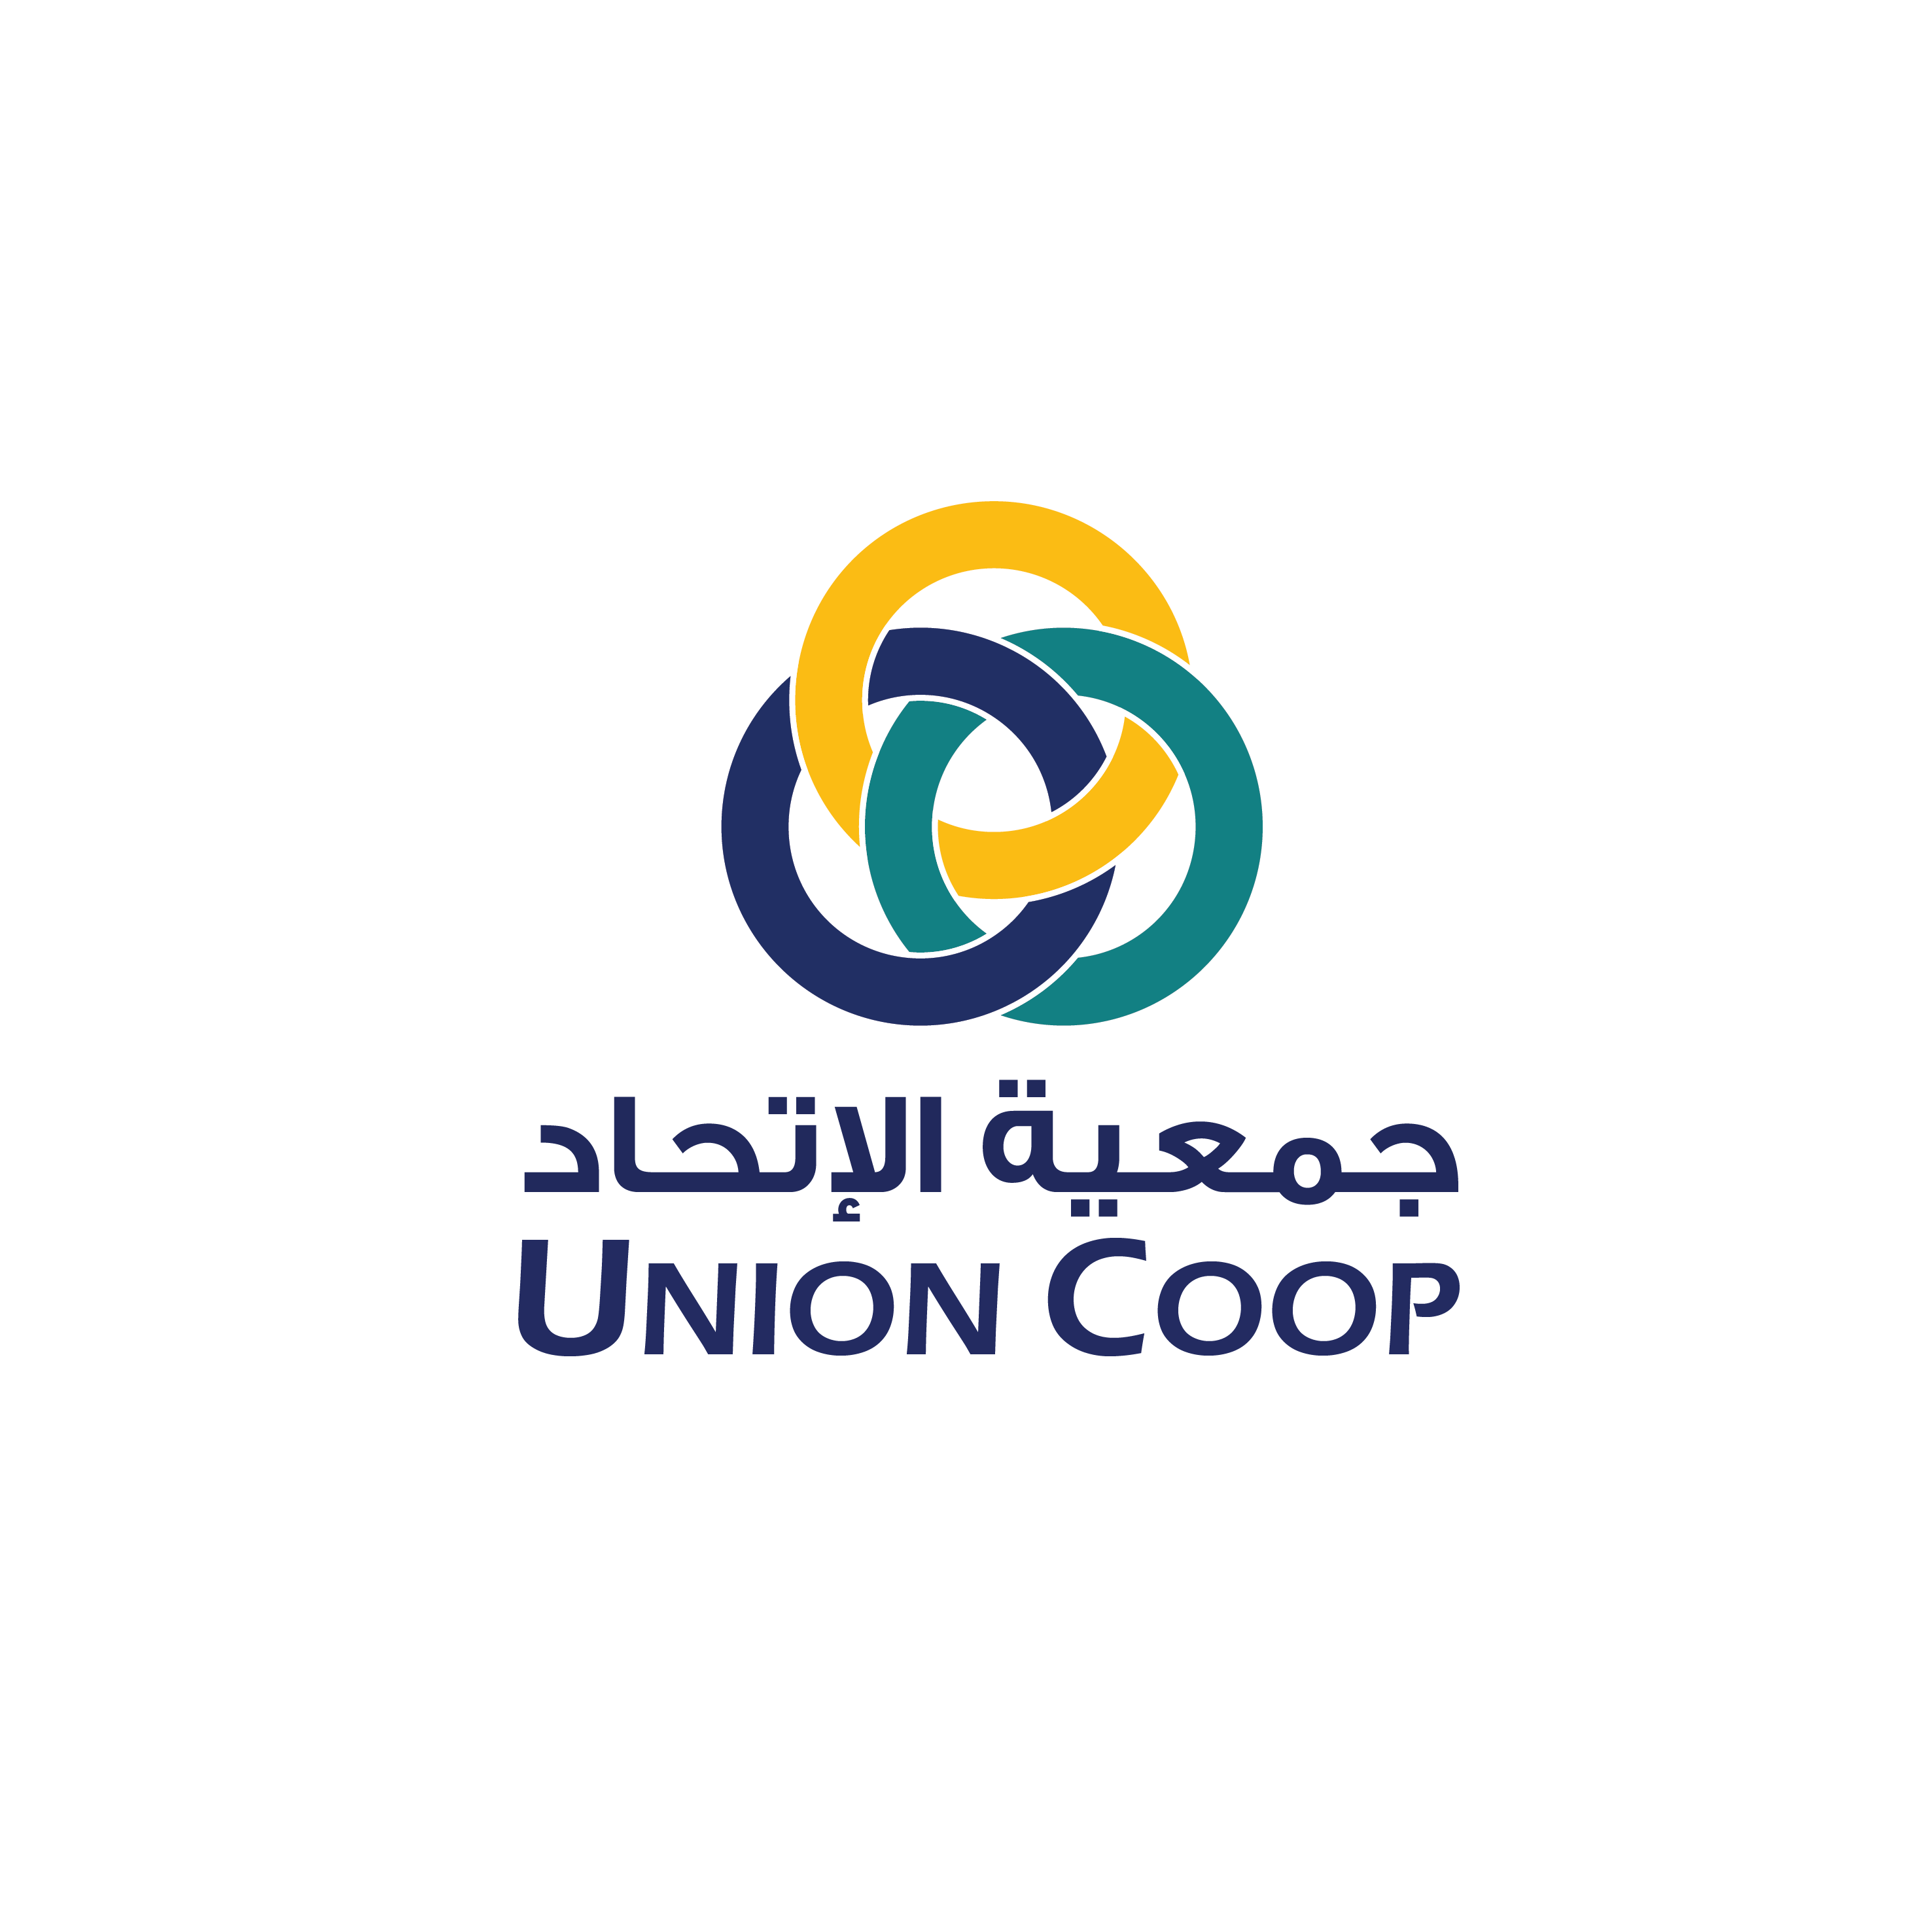 Union-Coop-01